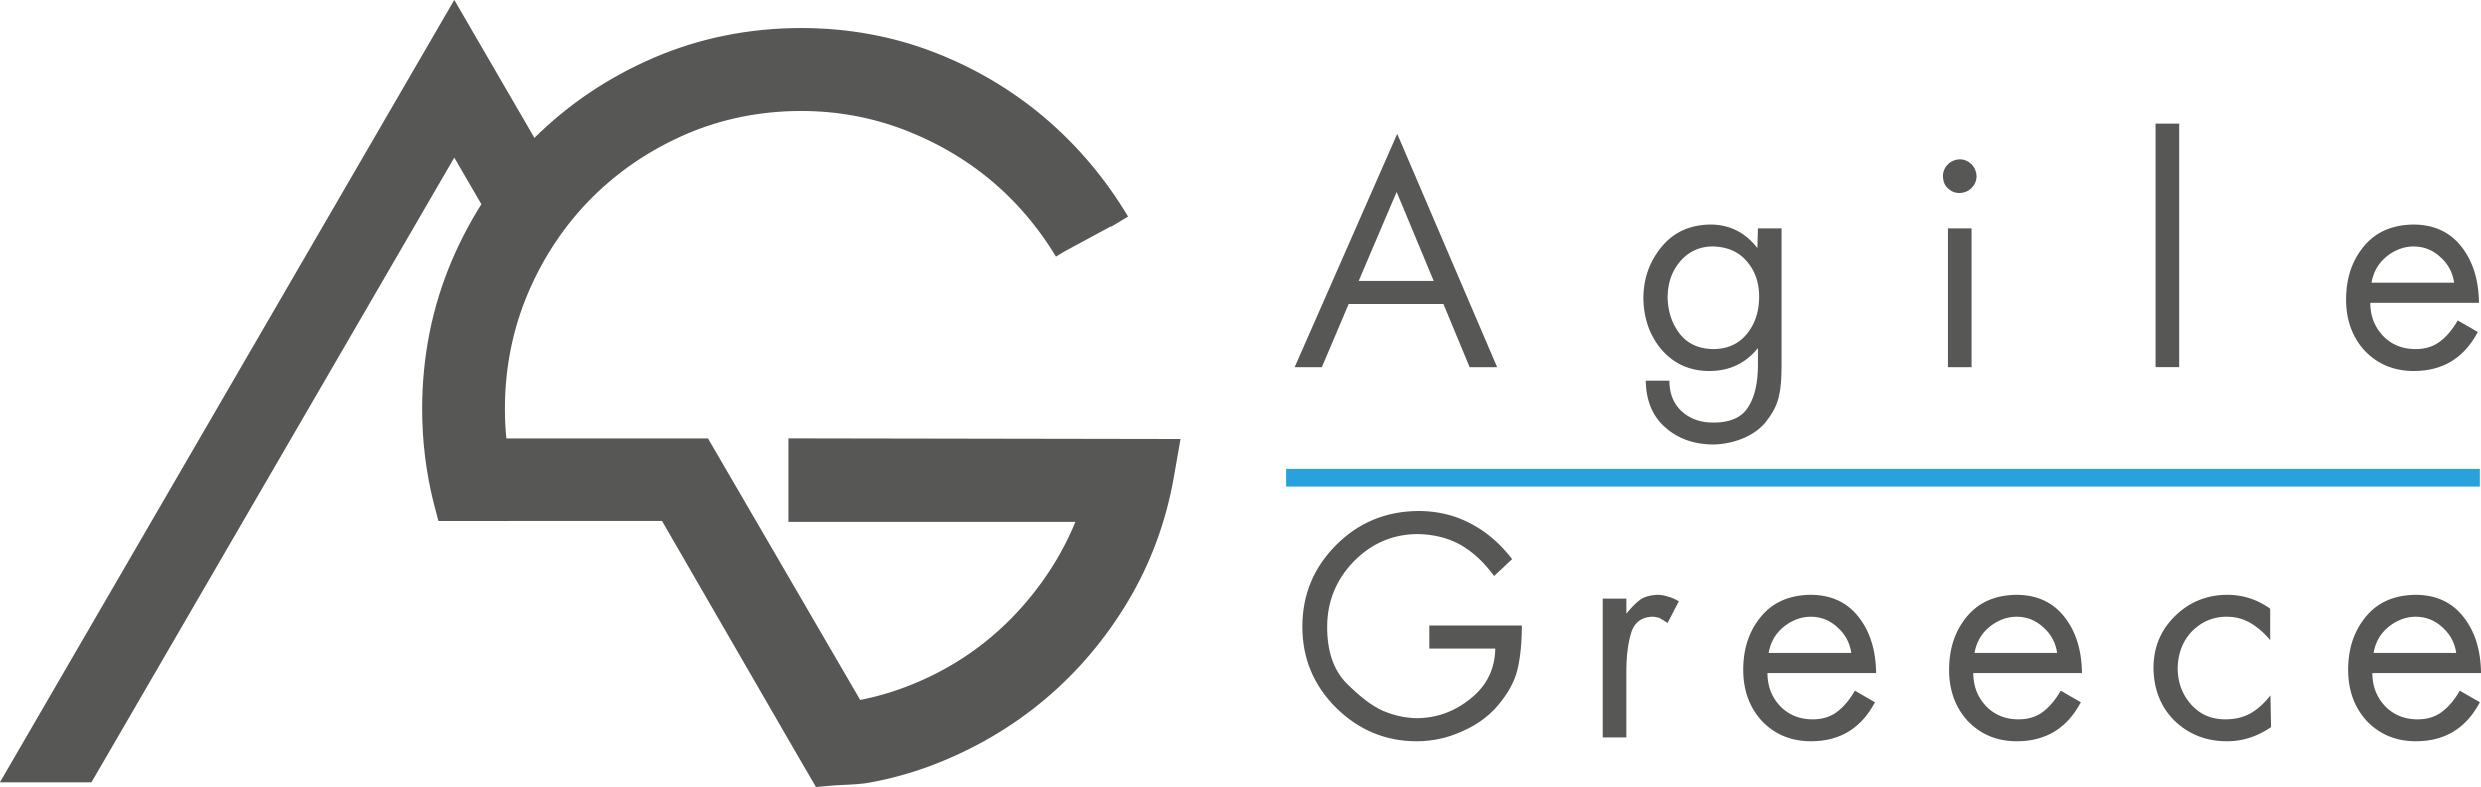 agilegreece_logo - Copy